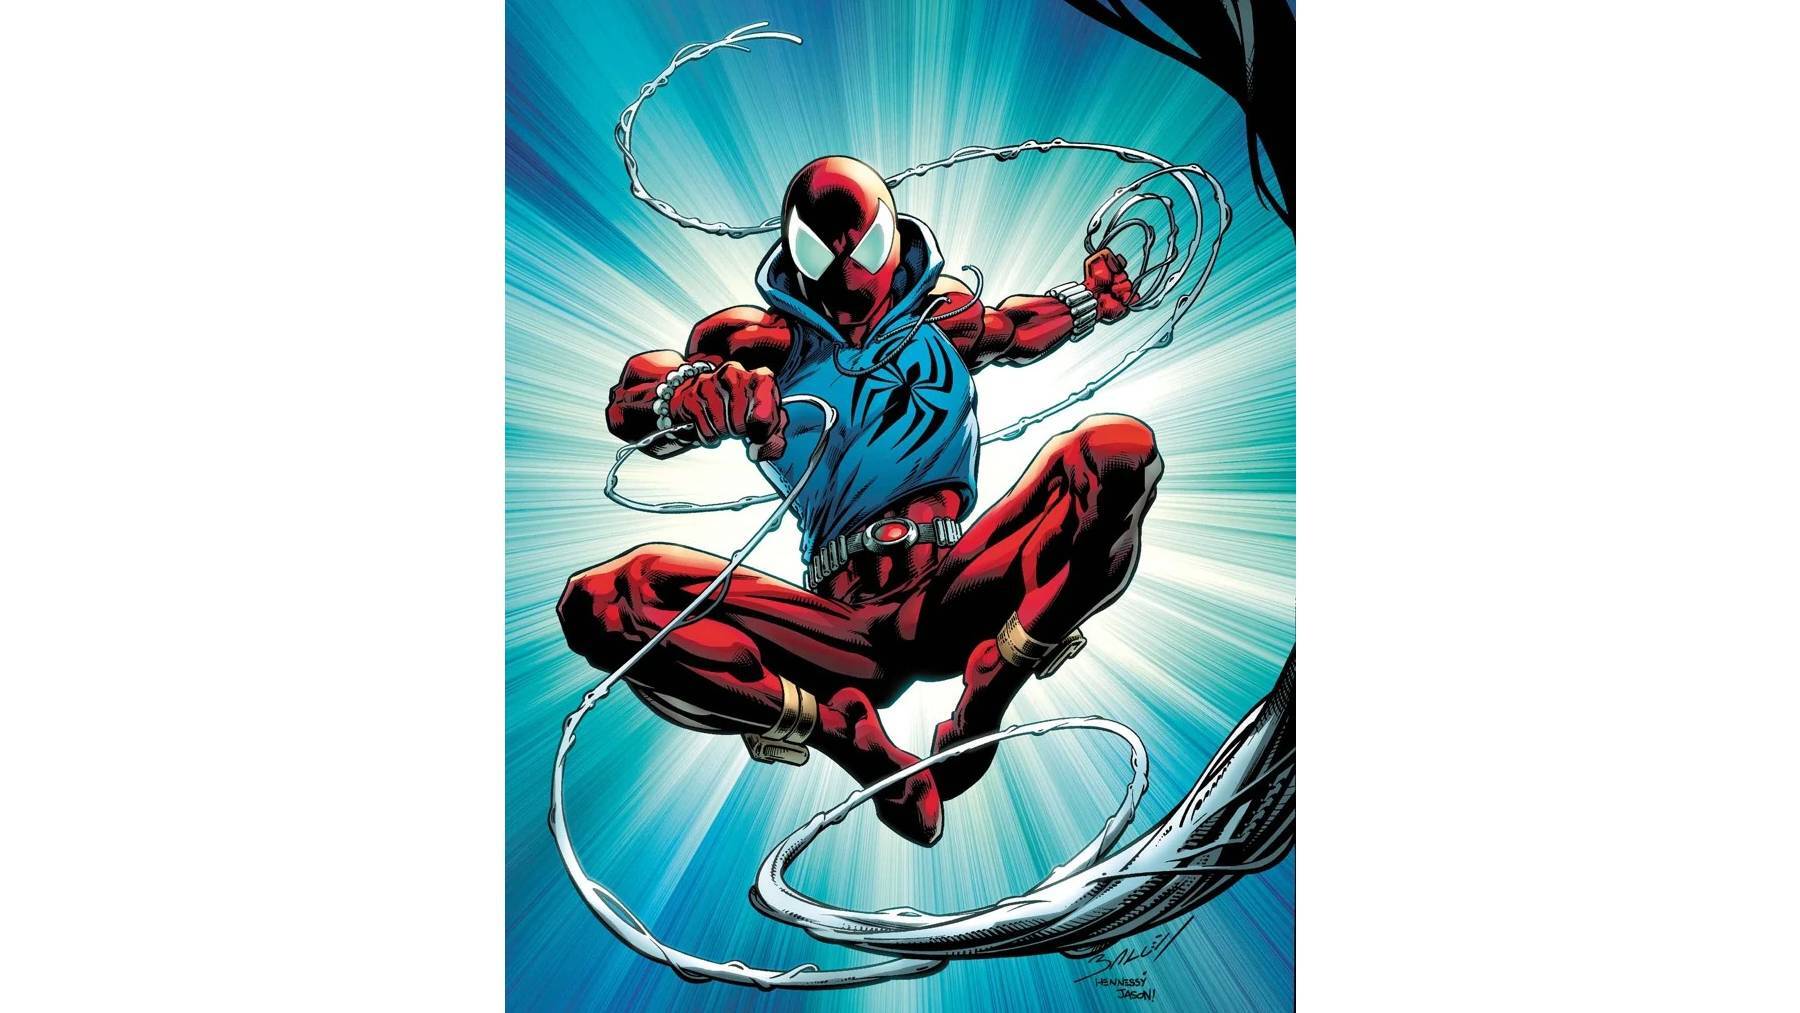 8. Scarlet Spider (Ben Reilly)